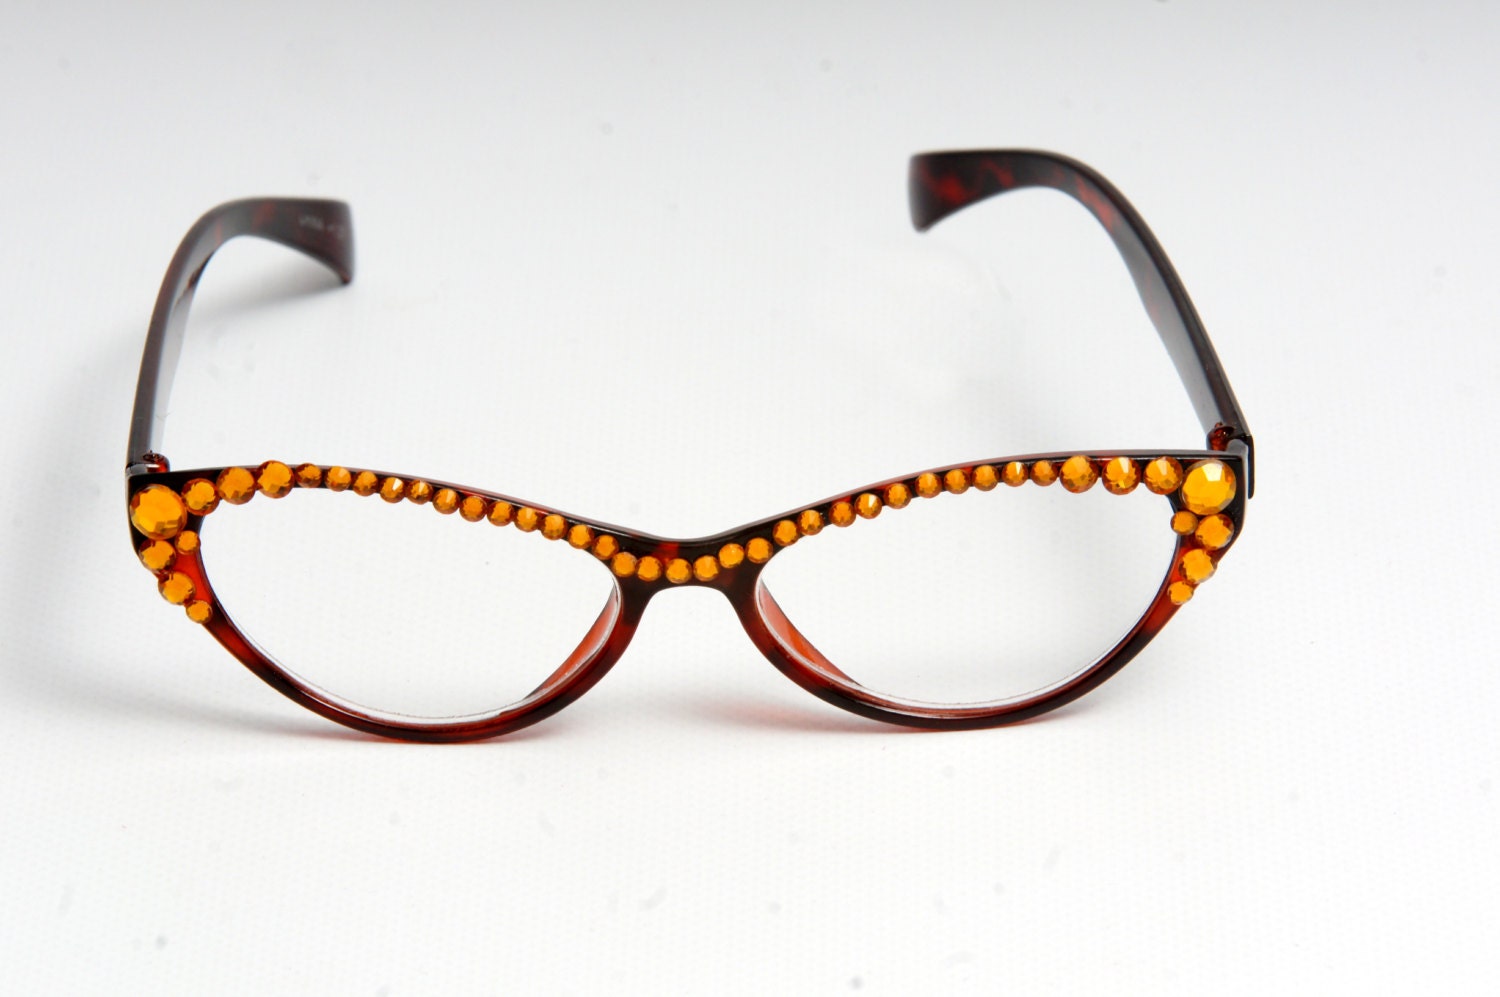 Items Similar To Swarovski Crystal Cat Eye Reading Glasses On Etsy